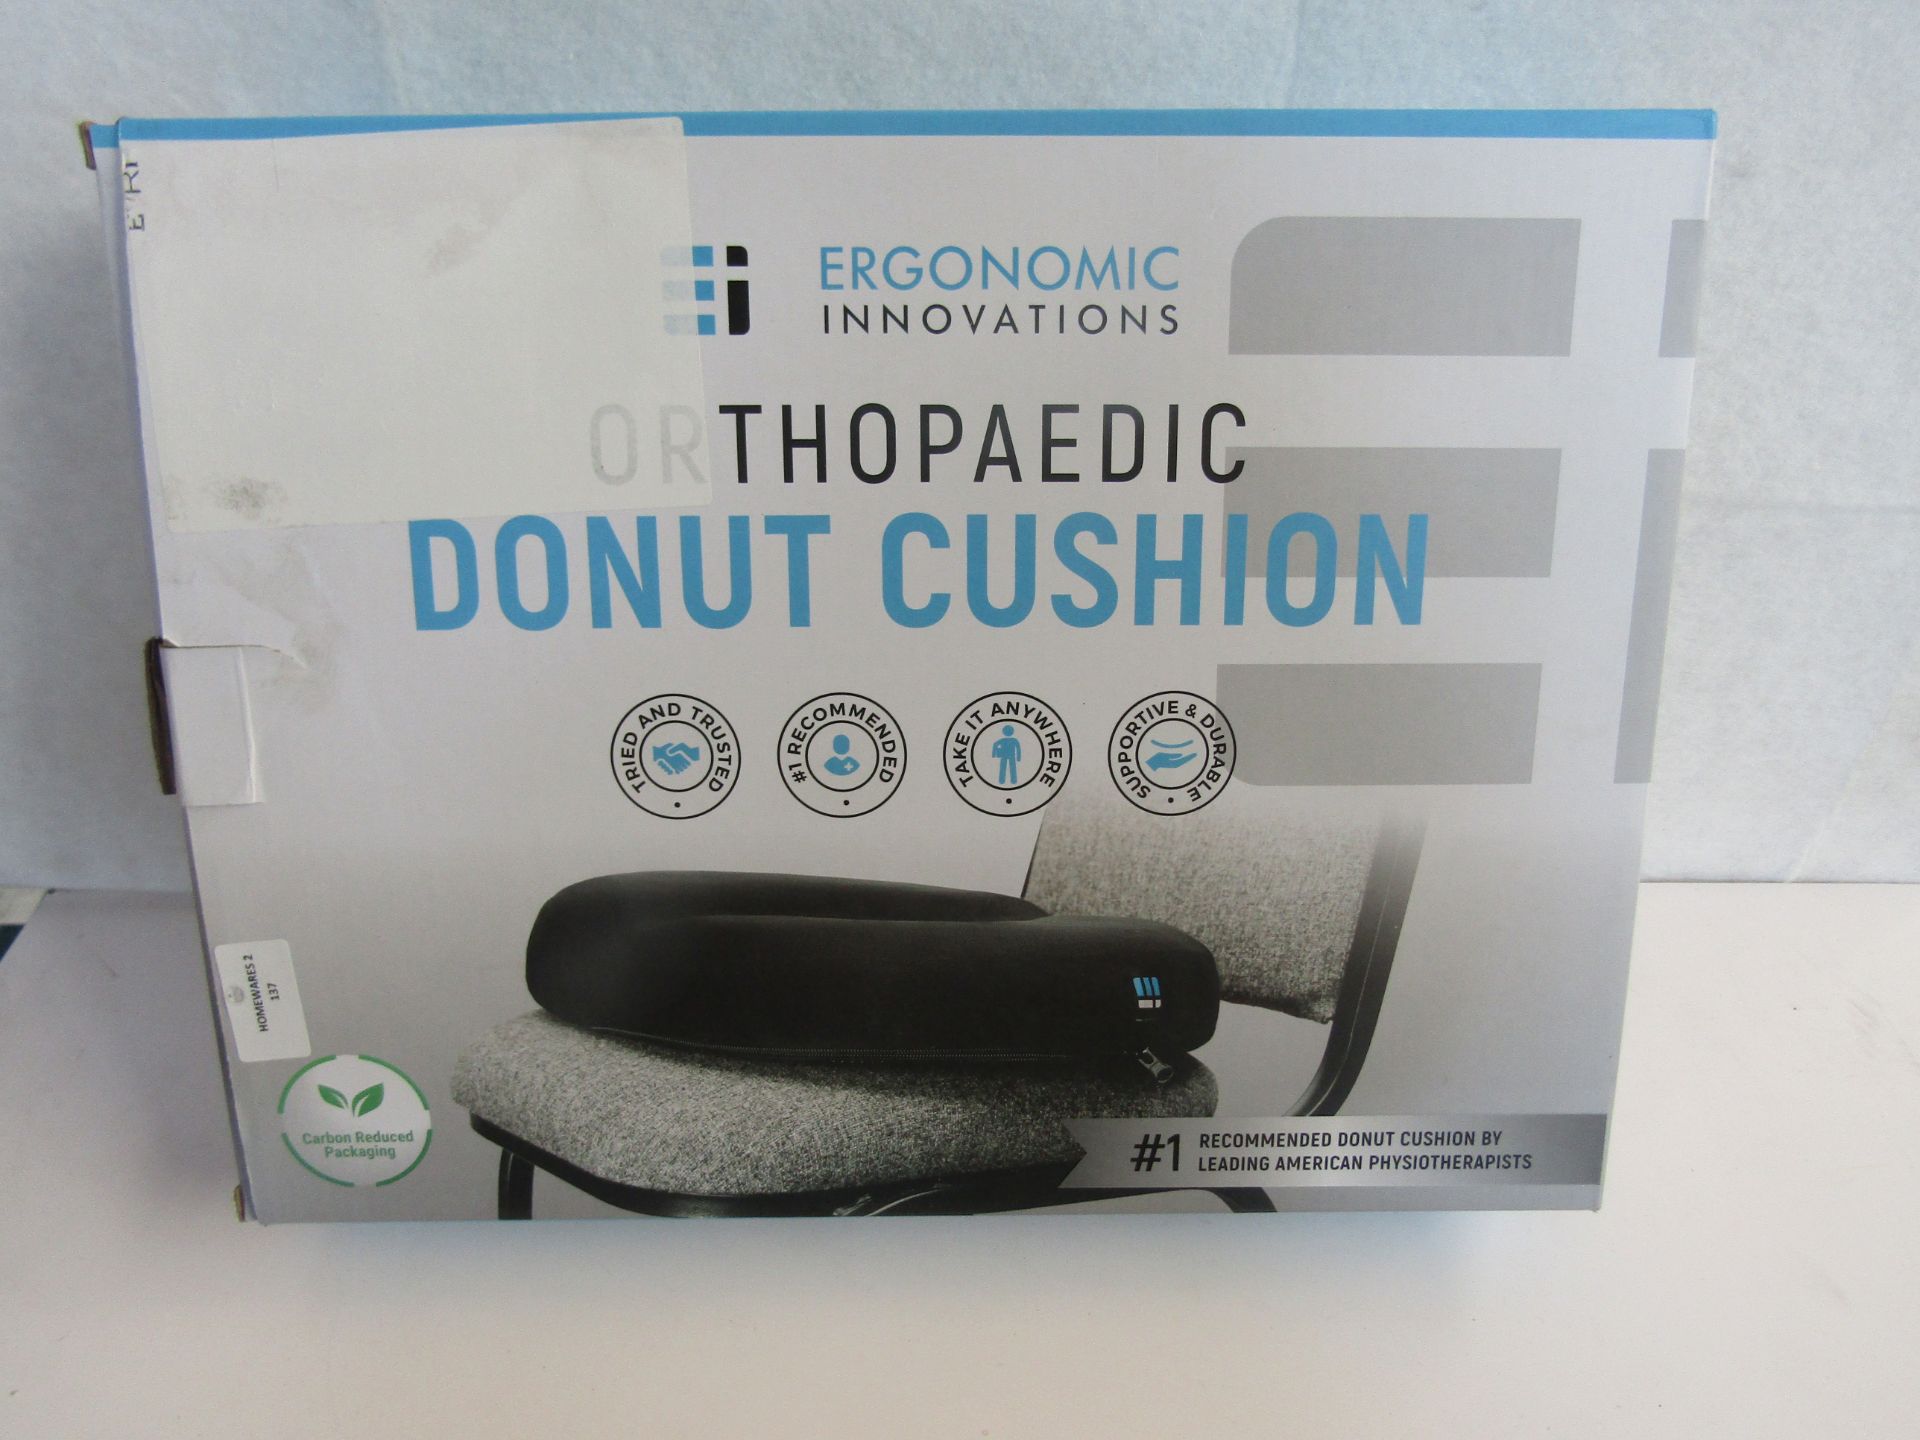 Ergonomic Innovations Orthopeadic Donut Cushion - Unchecked & Boxed.